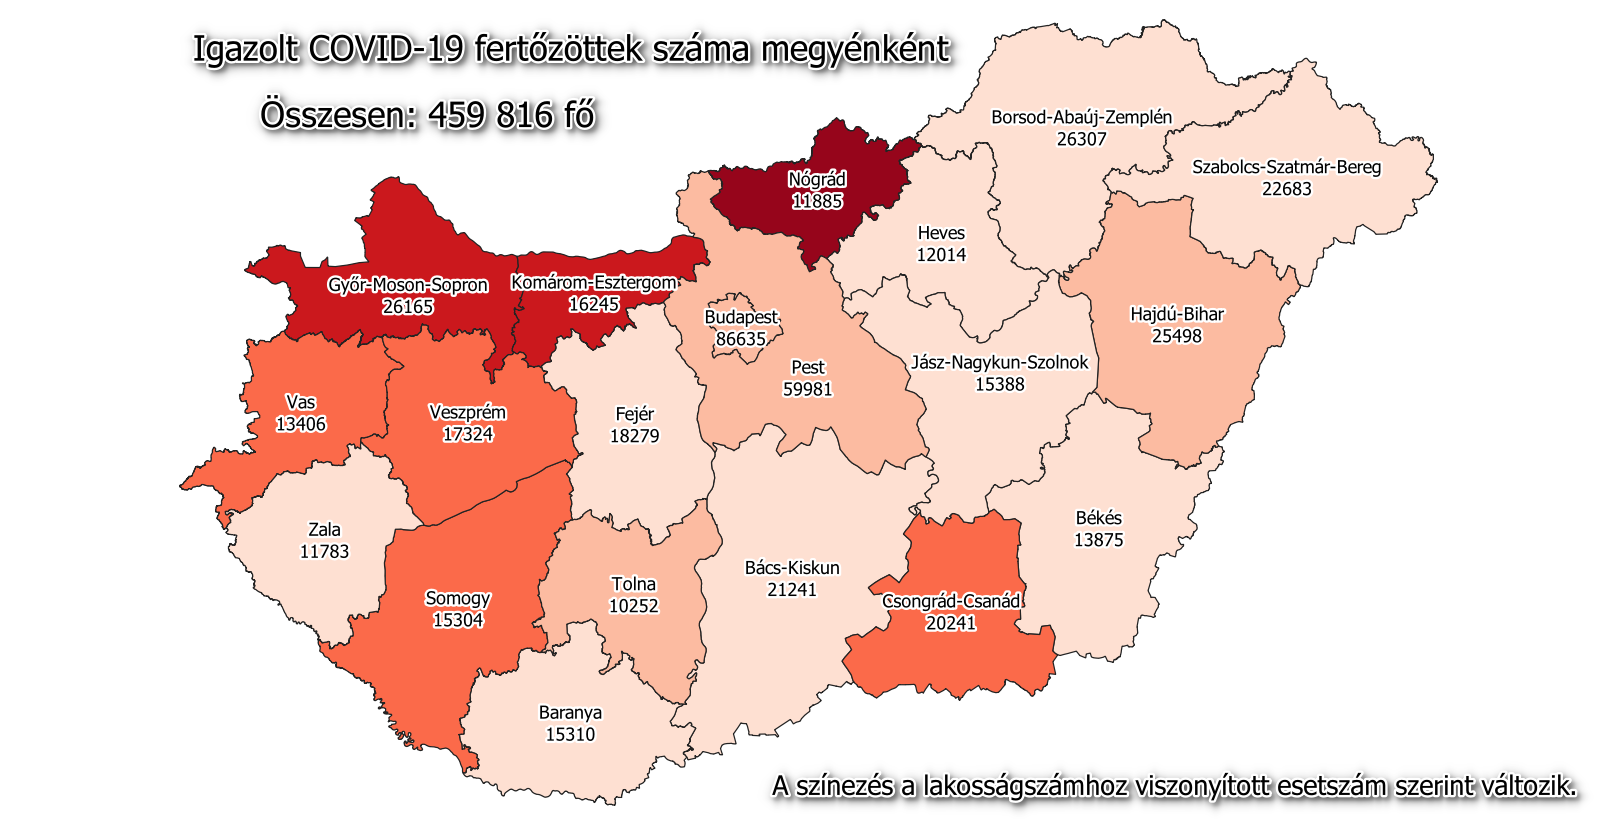 हंगरी कोविड नक्शा